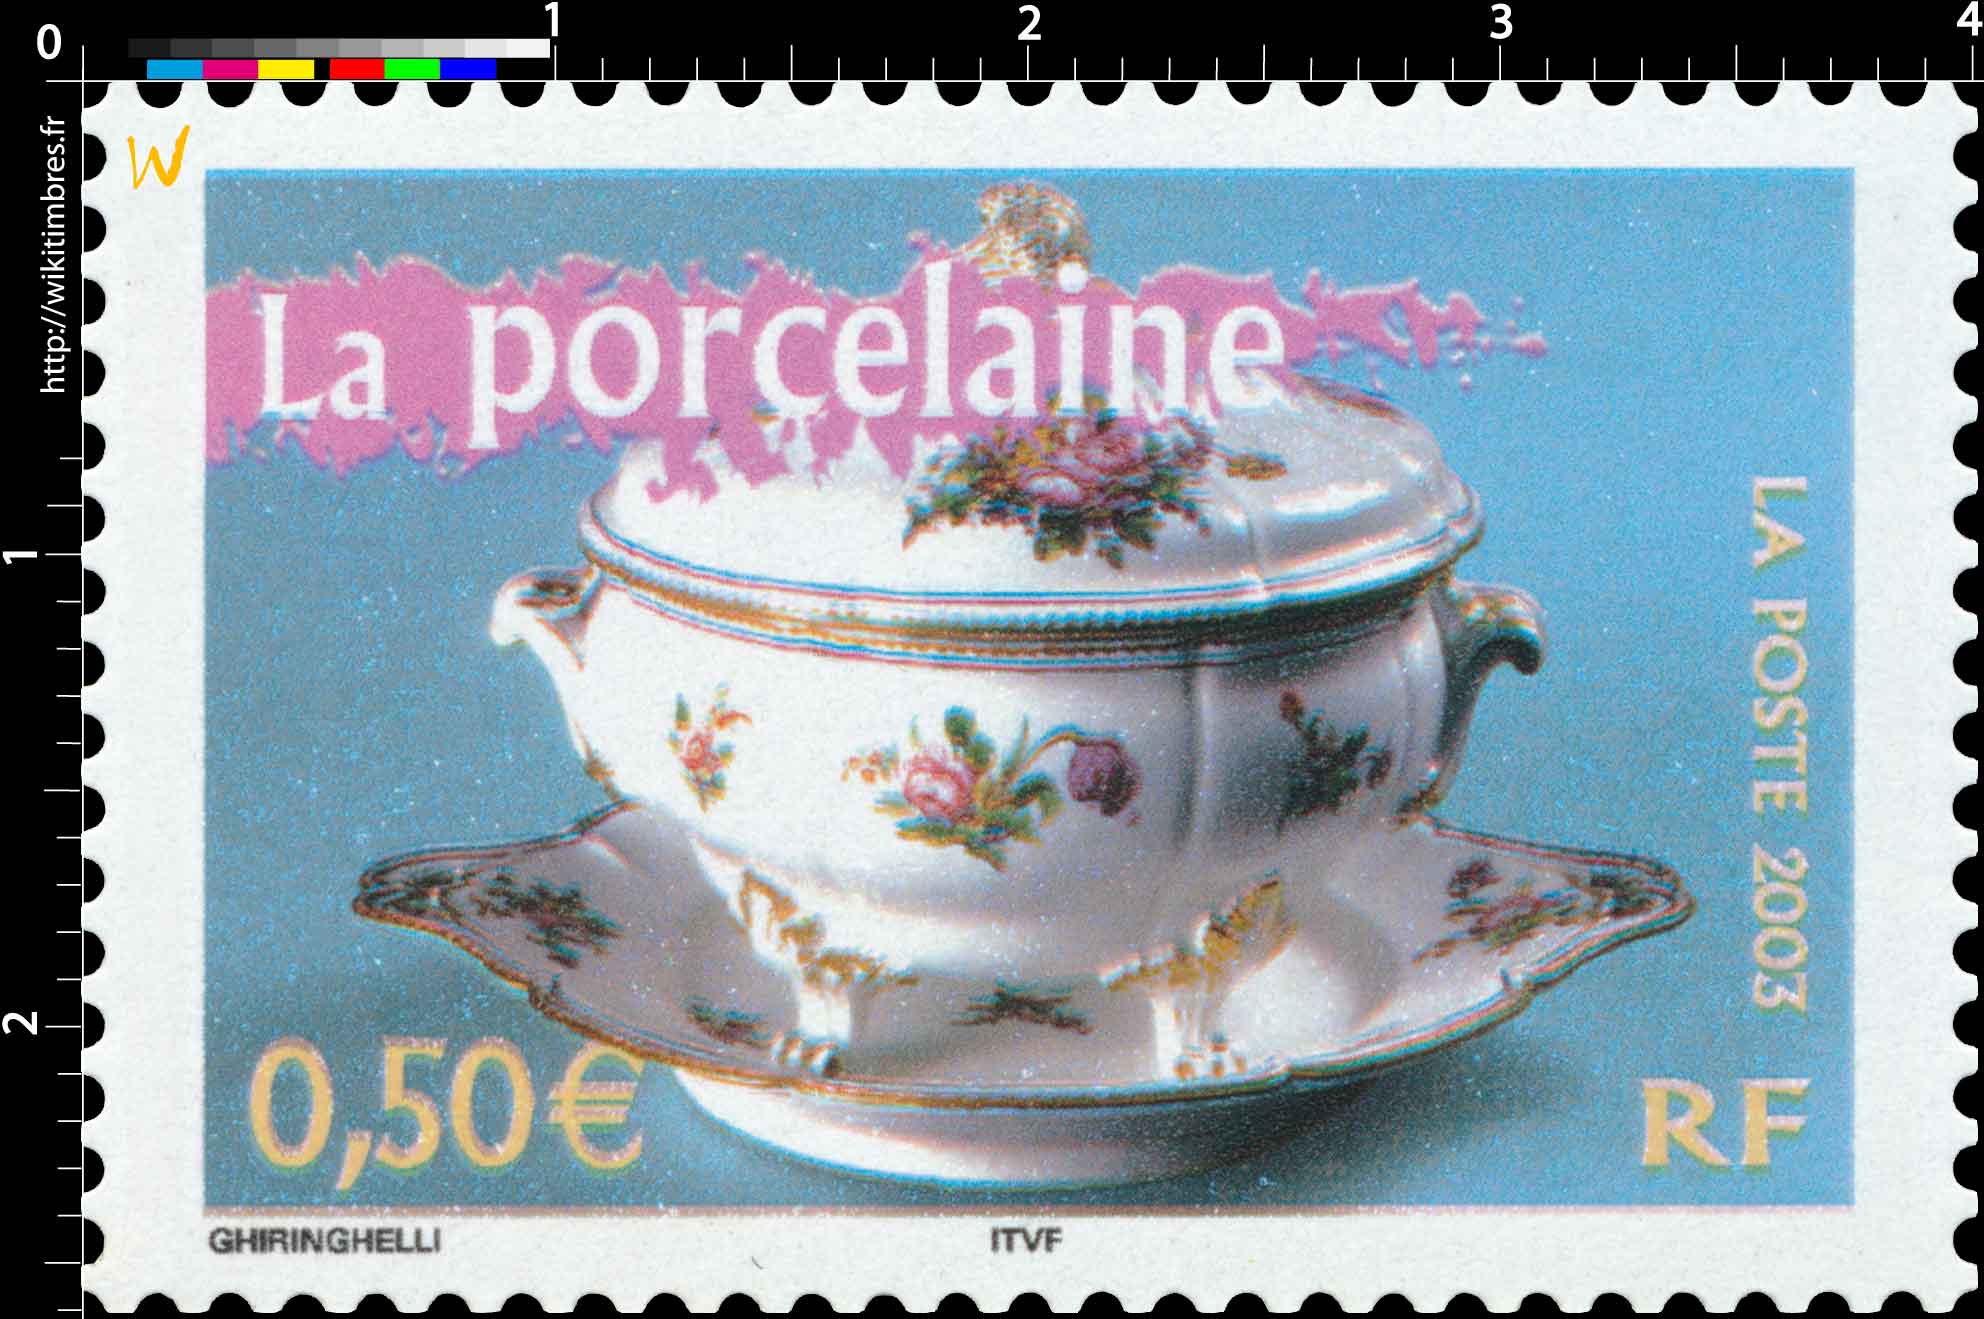 2003 La porcelaine